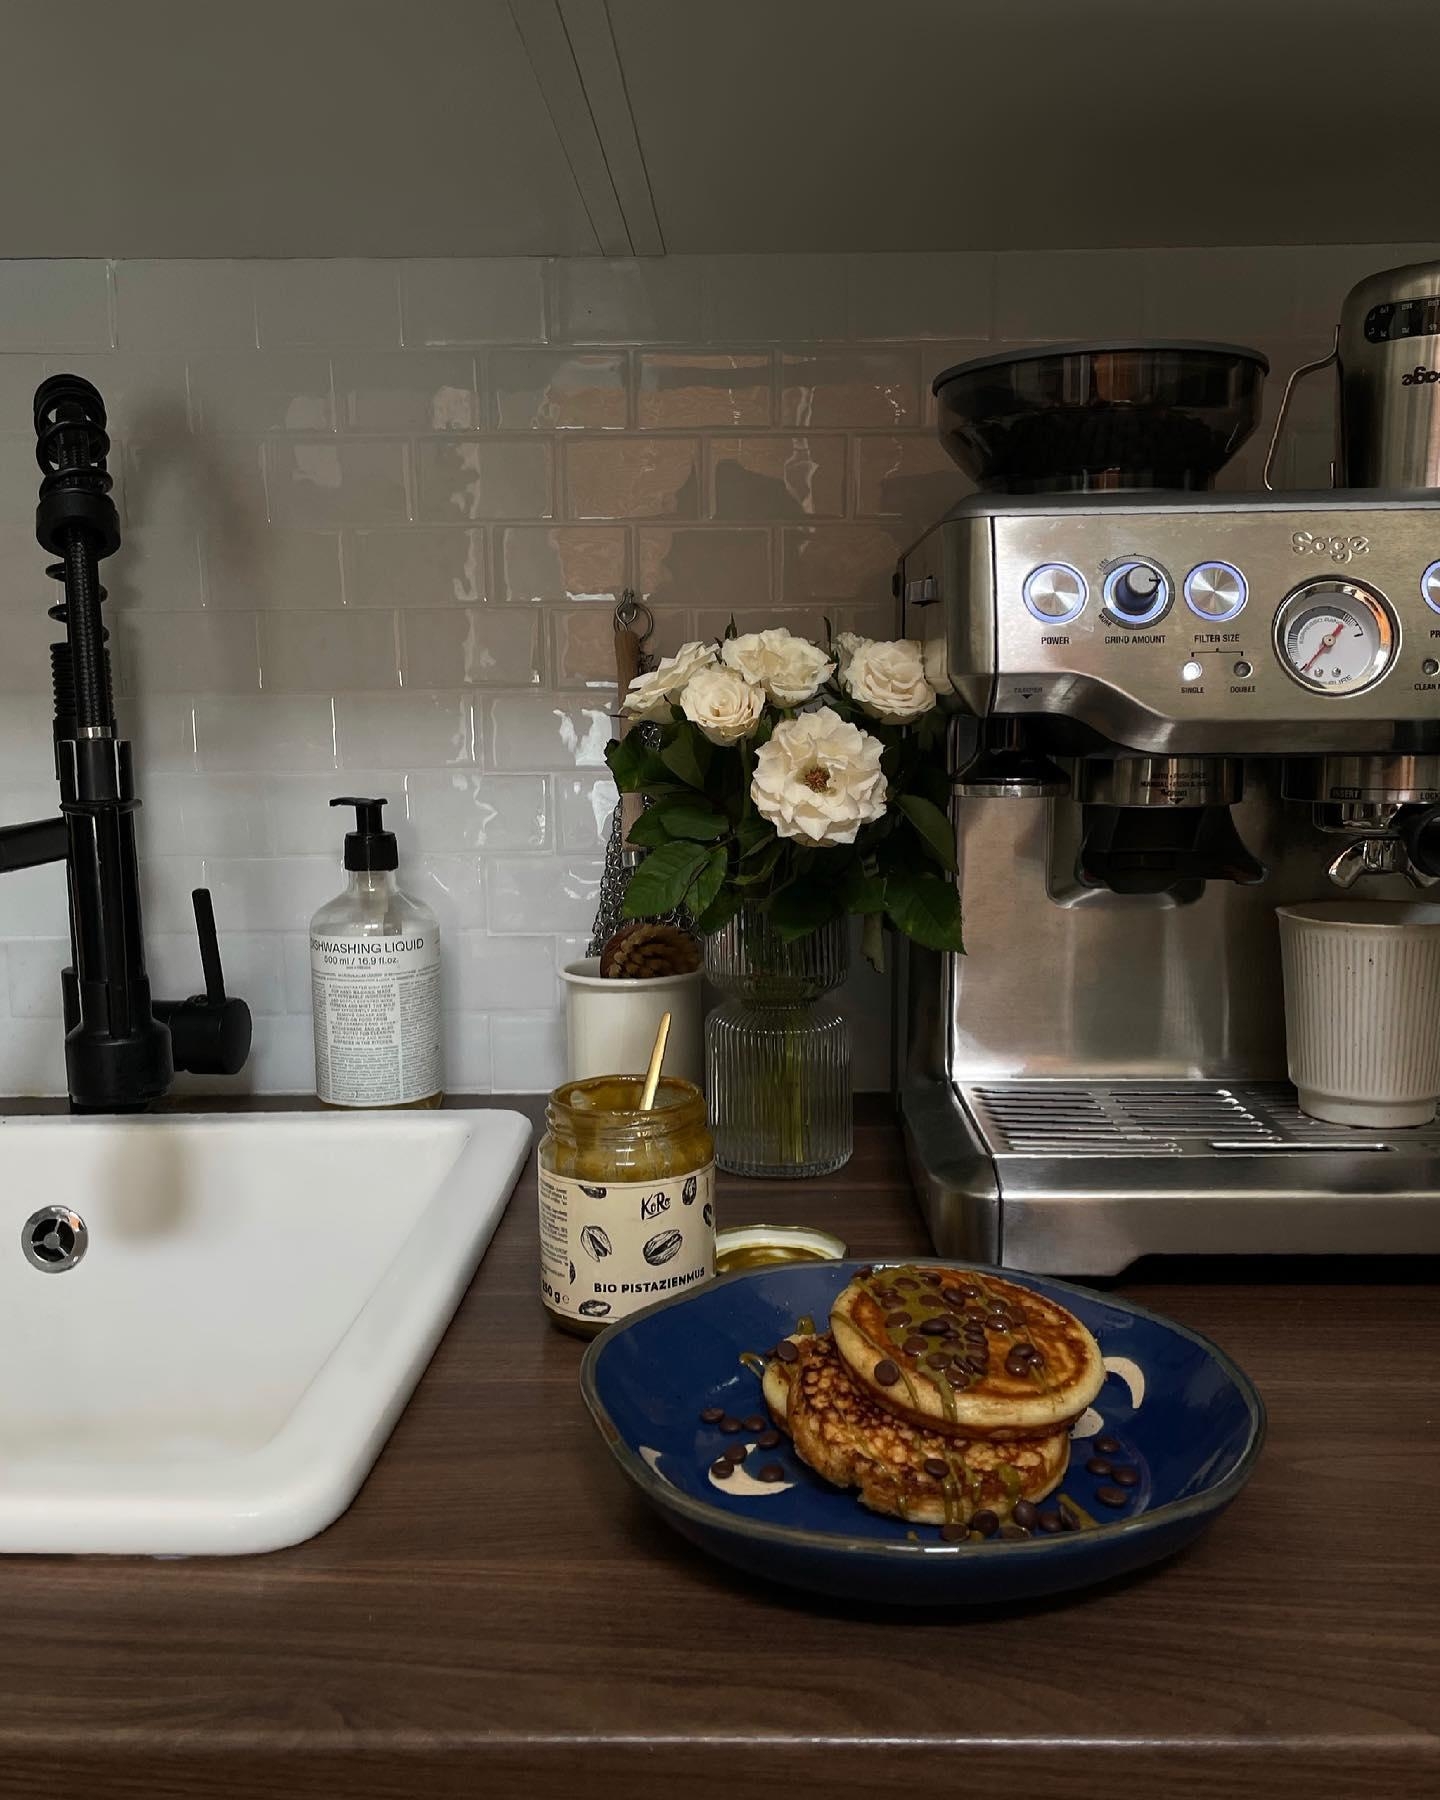 Pancakes gehen immer.
#küche #pancakes #espressomaschine #blumen #kücheninspiration #inspo #susannawurz